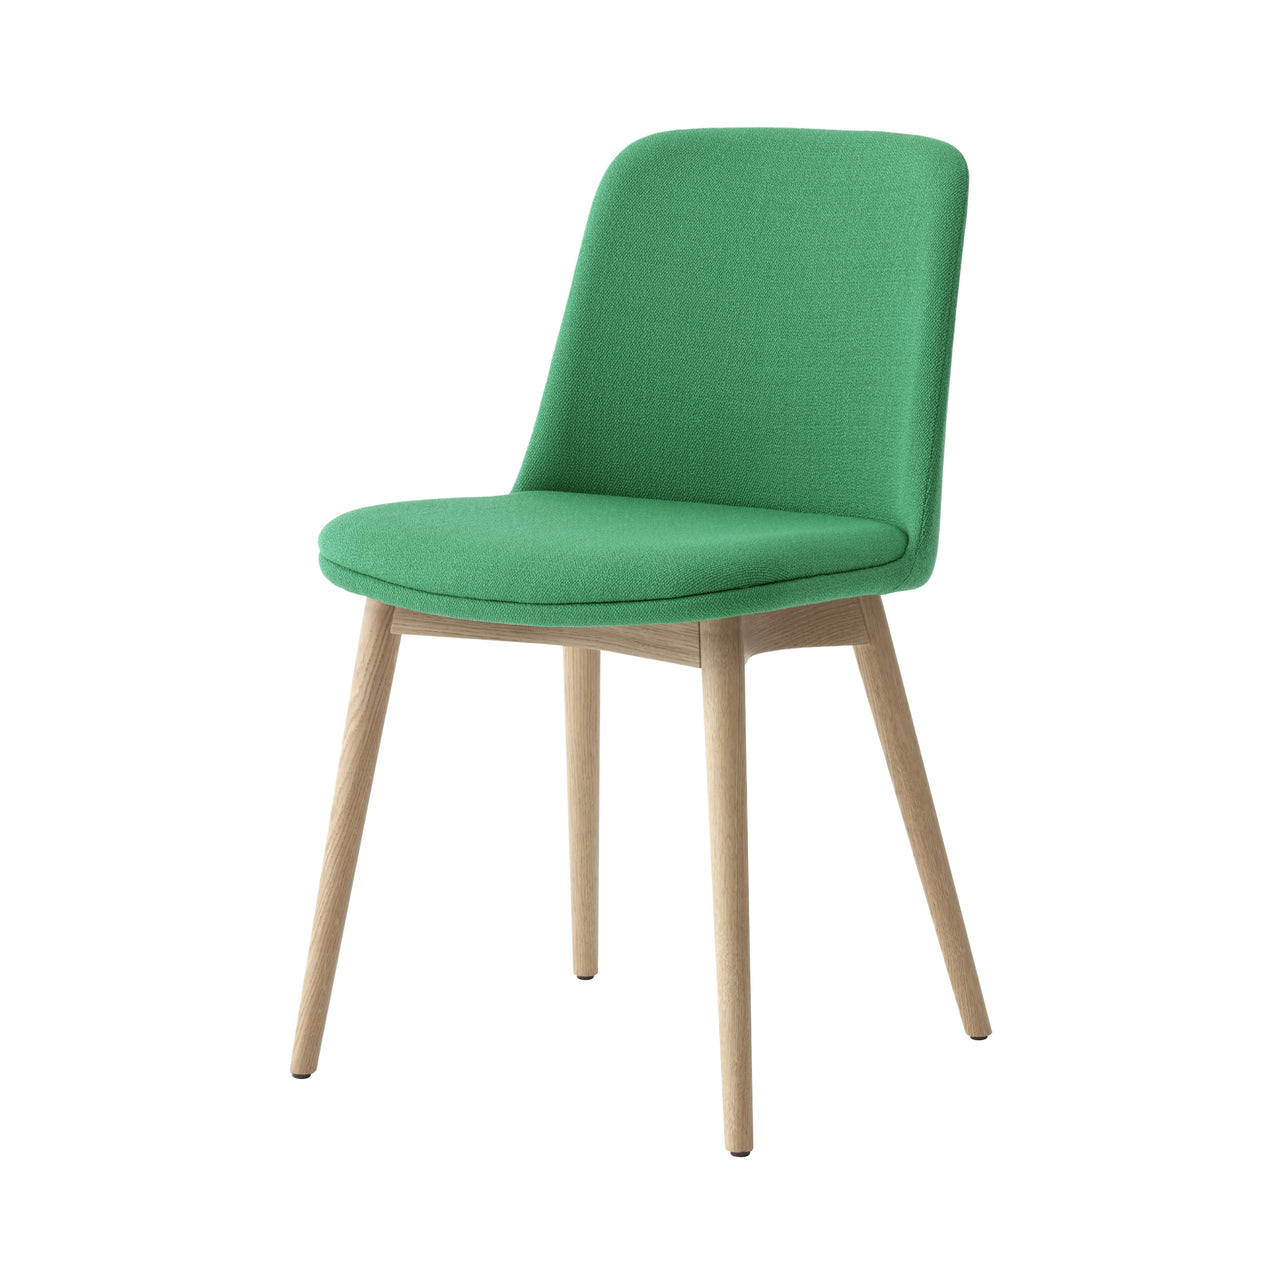 Rely Chair HW74: Oak